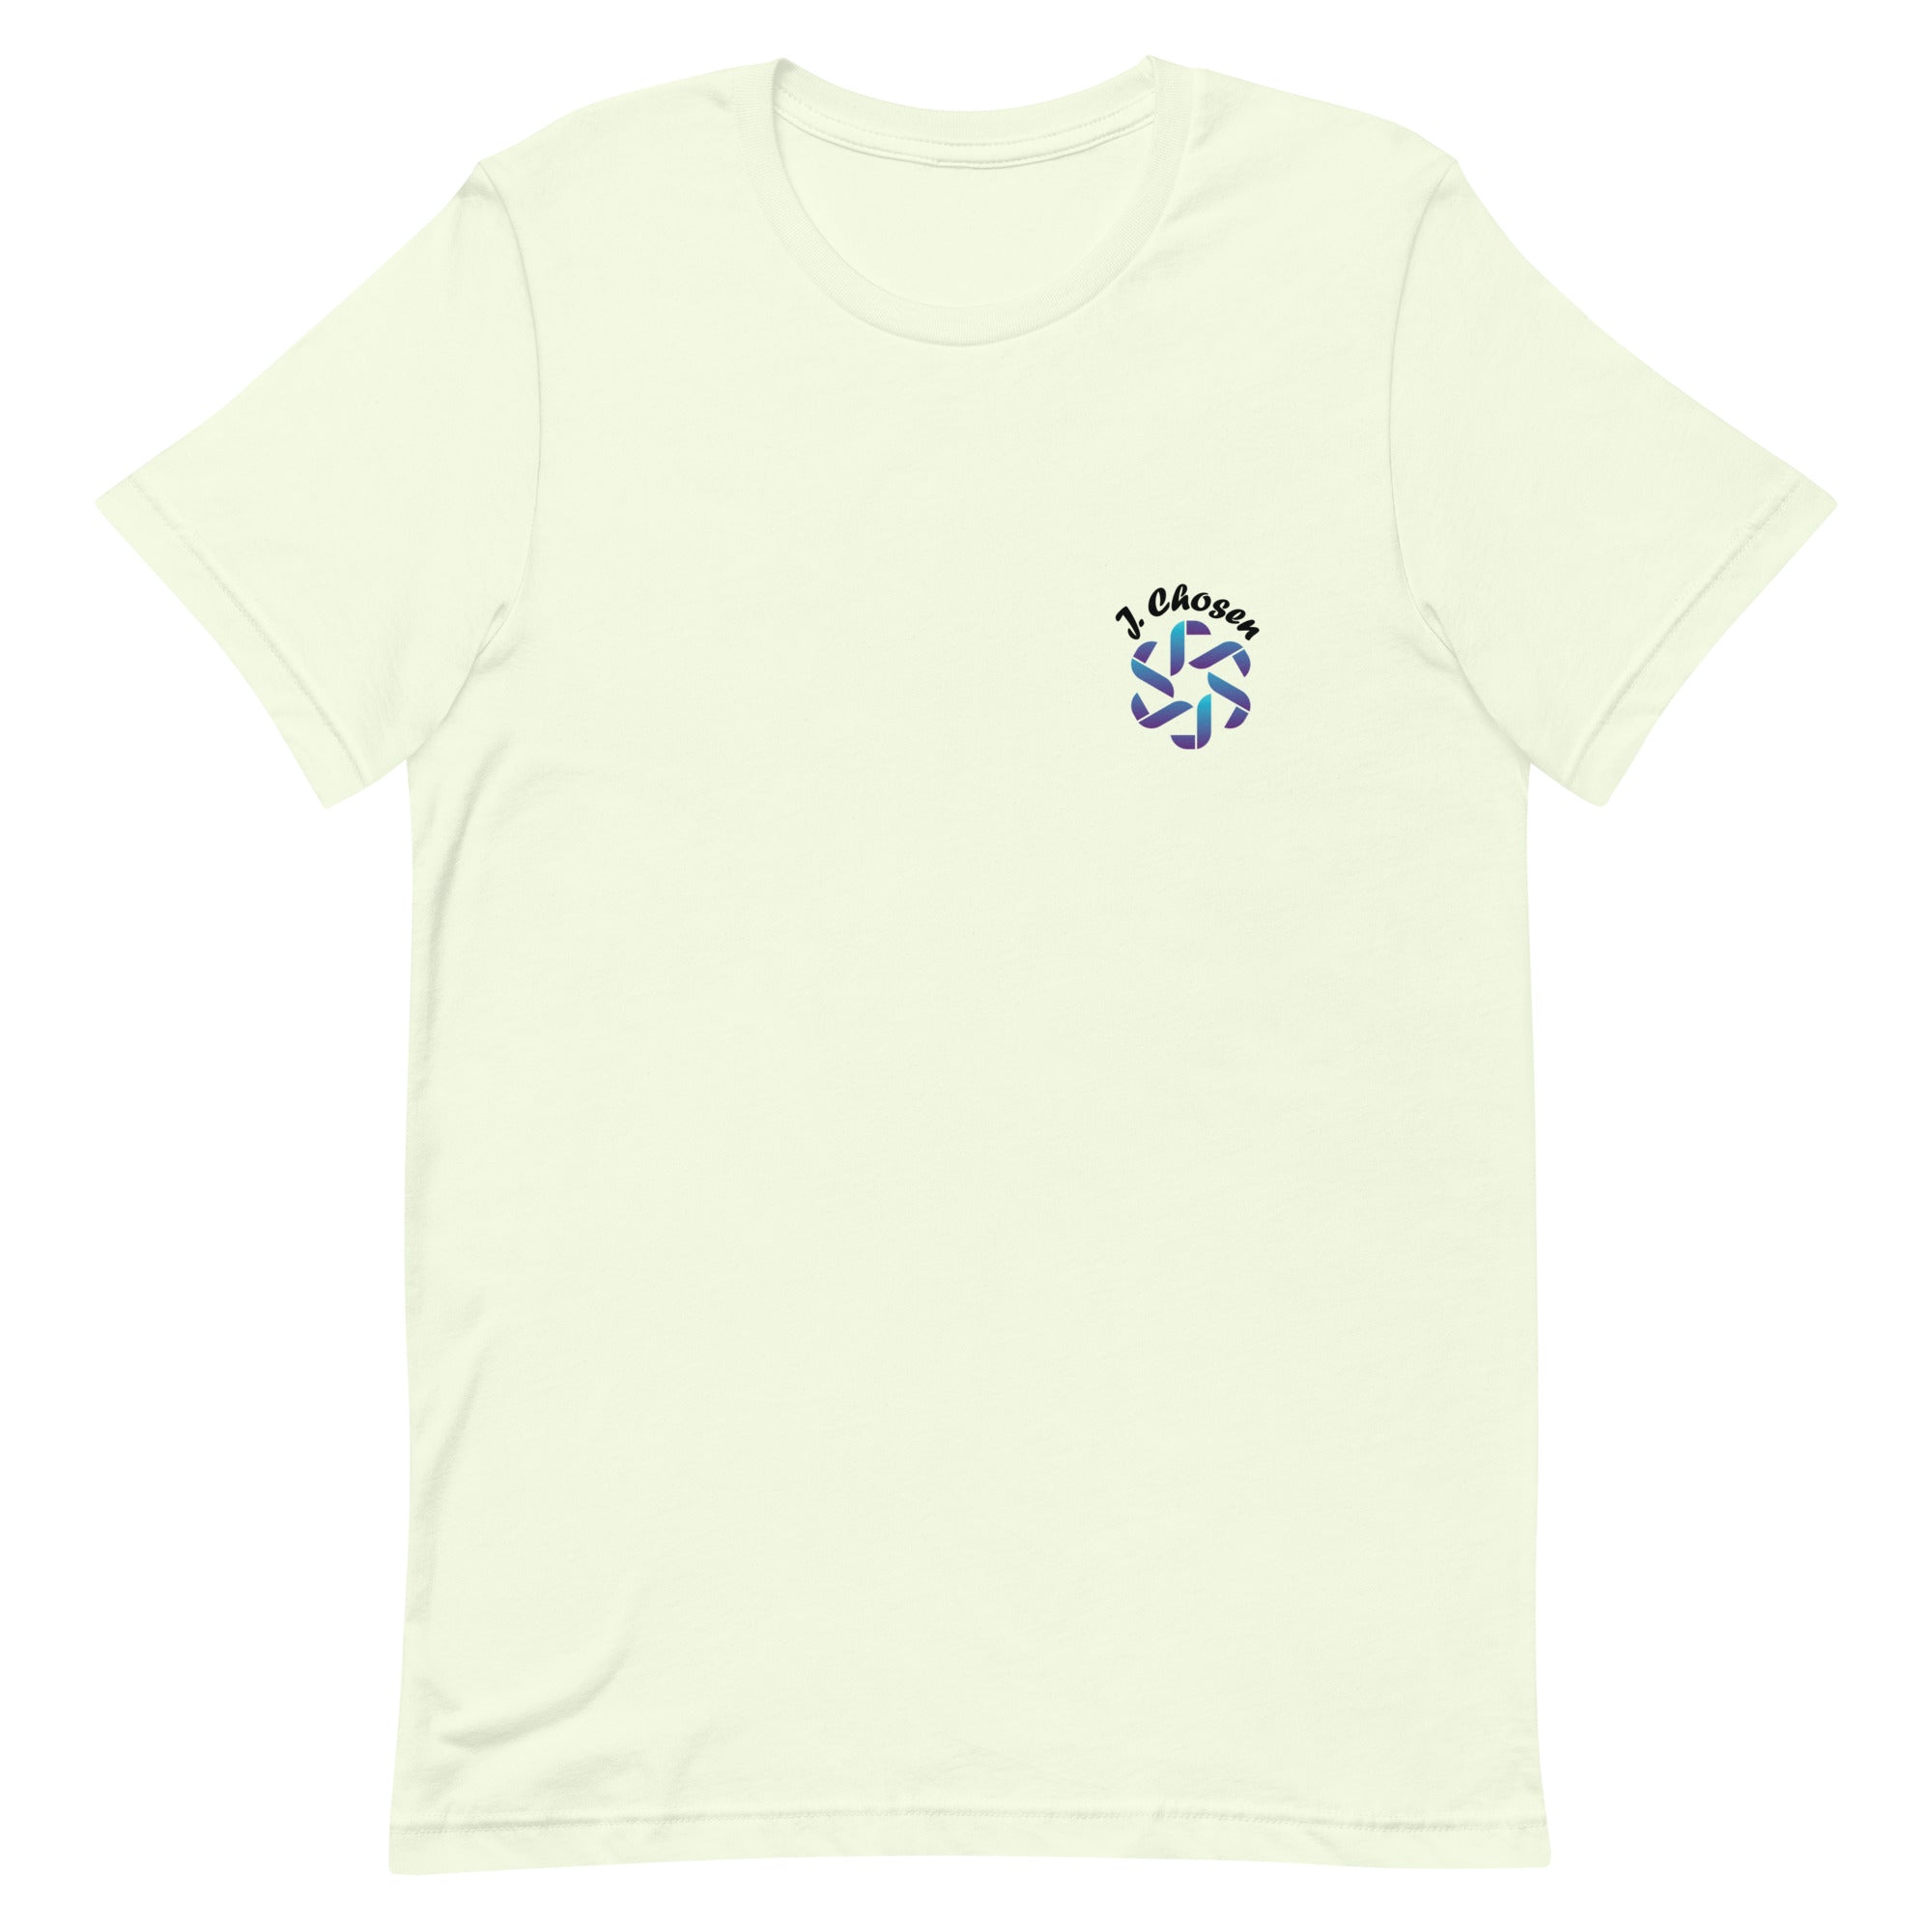 Jchosen - Unisex t-shirt